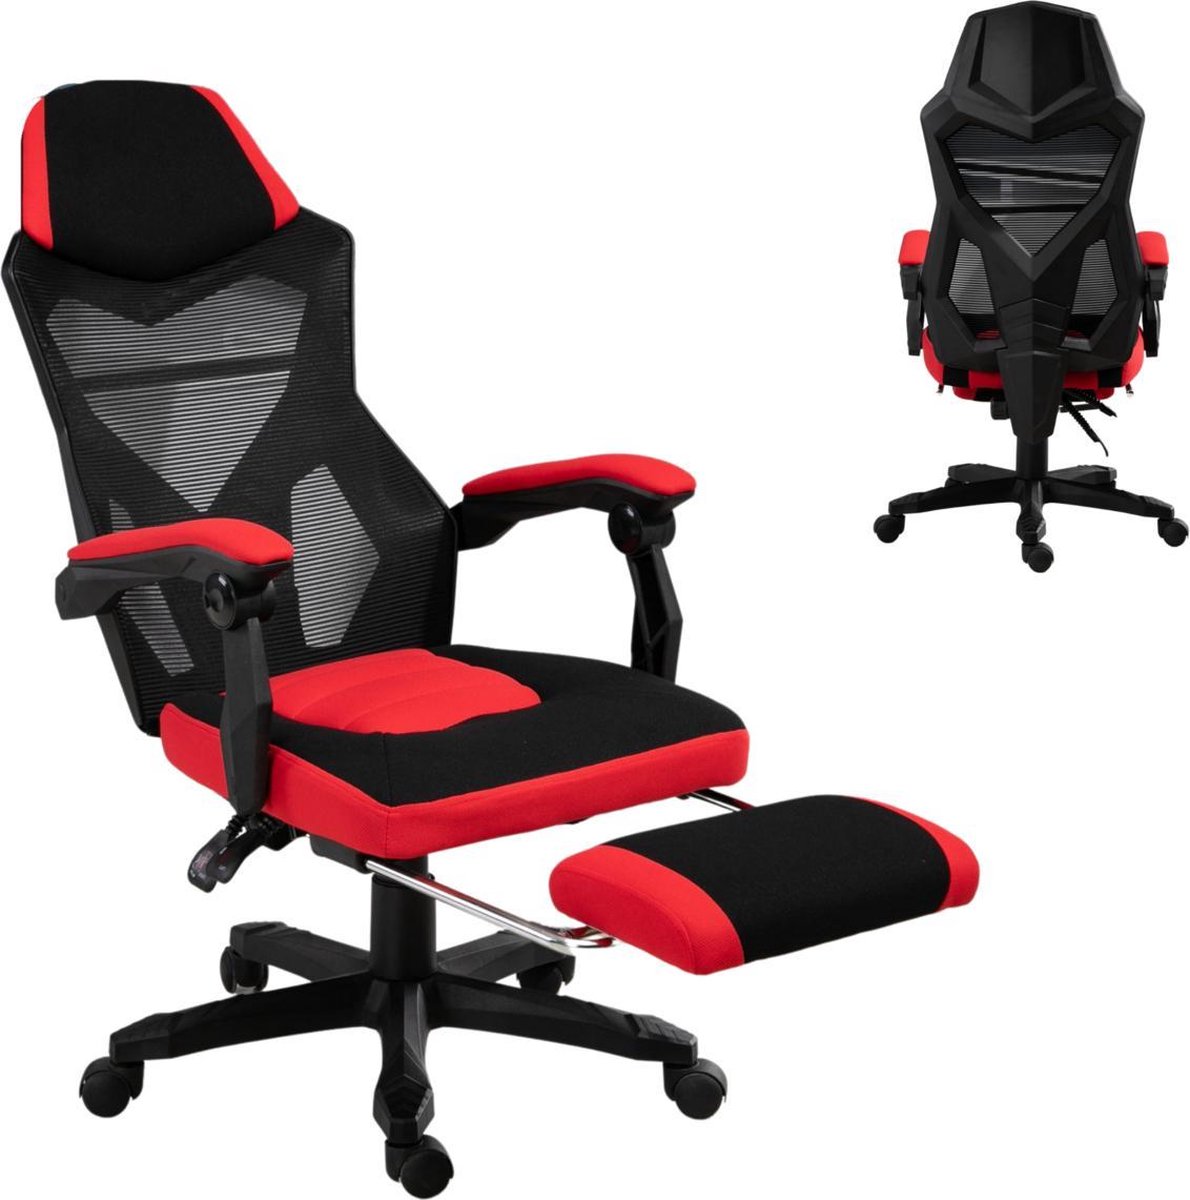 Game Stoel - Gaming stoel - Gaming chair - Met voetensteun - Racing style - Zwart/Rood - Merkloos